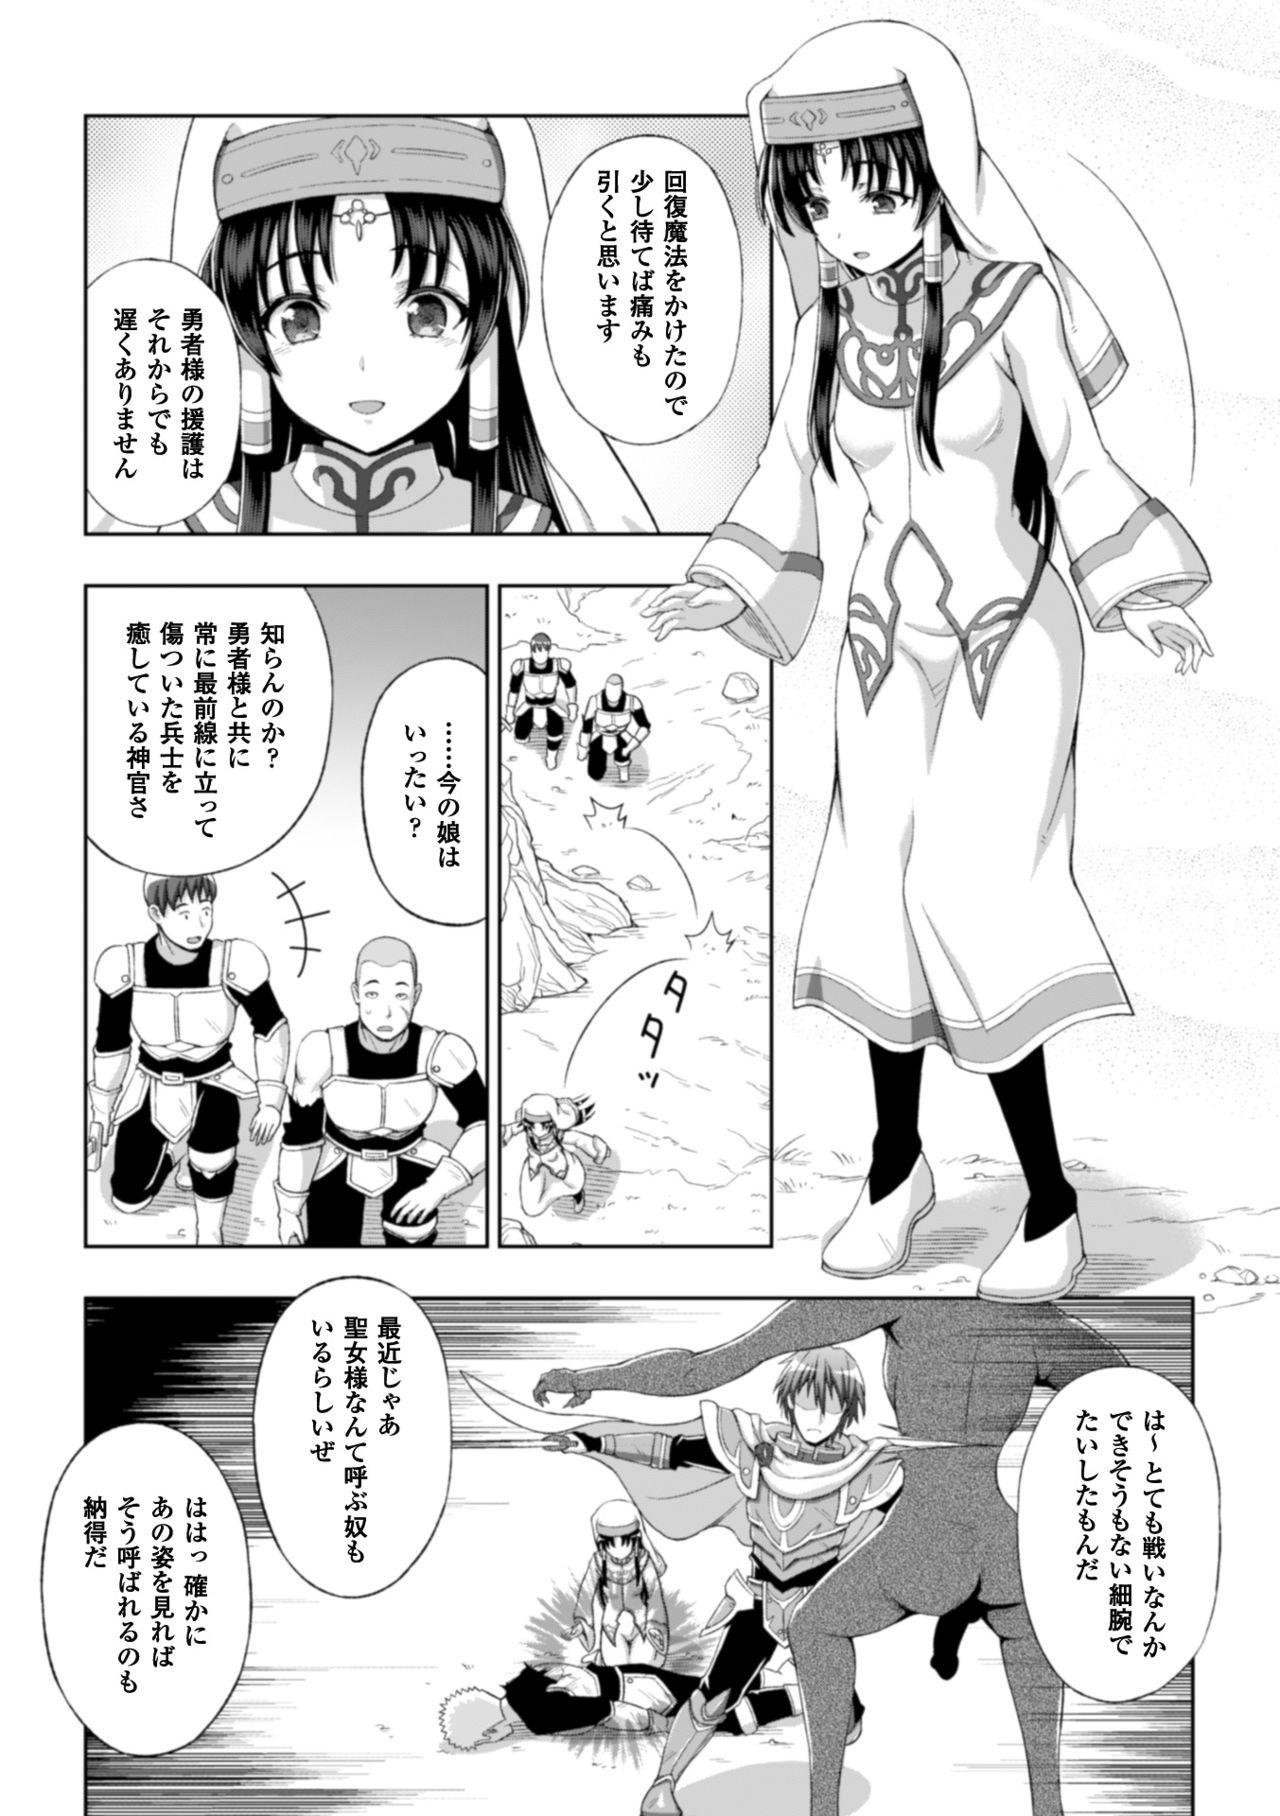 Seigi no Heroine Kangoku File Vol. 8 8